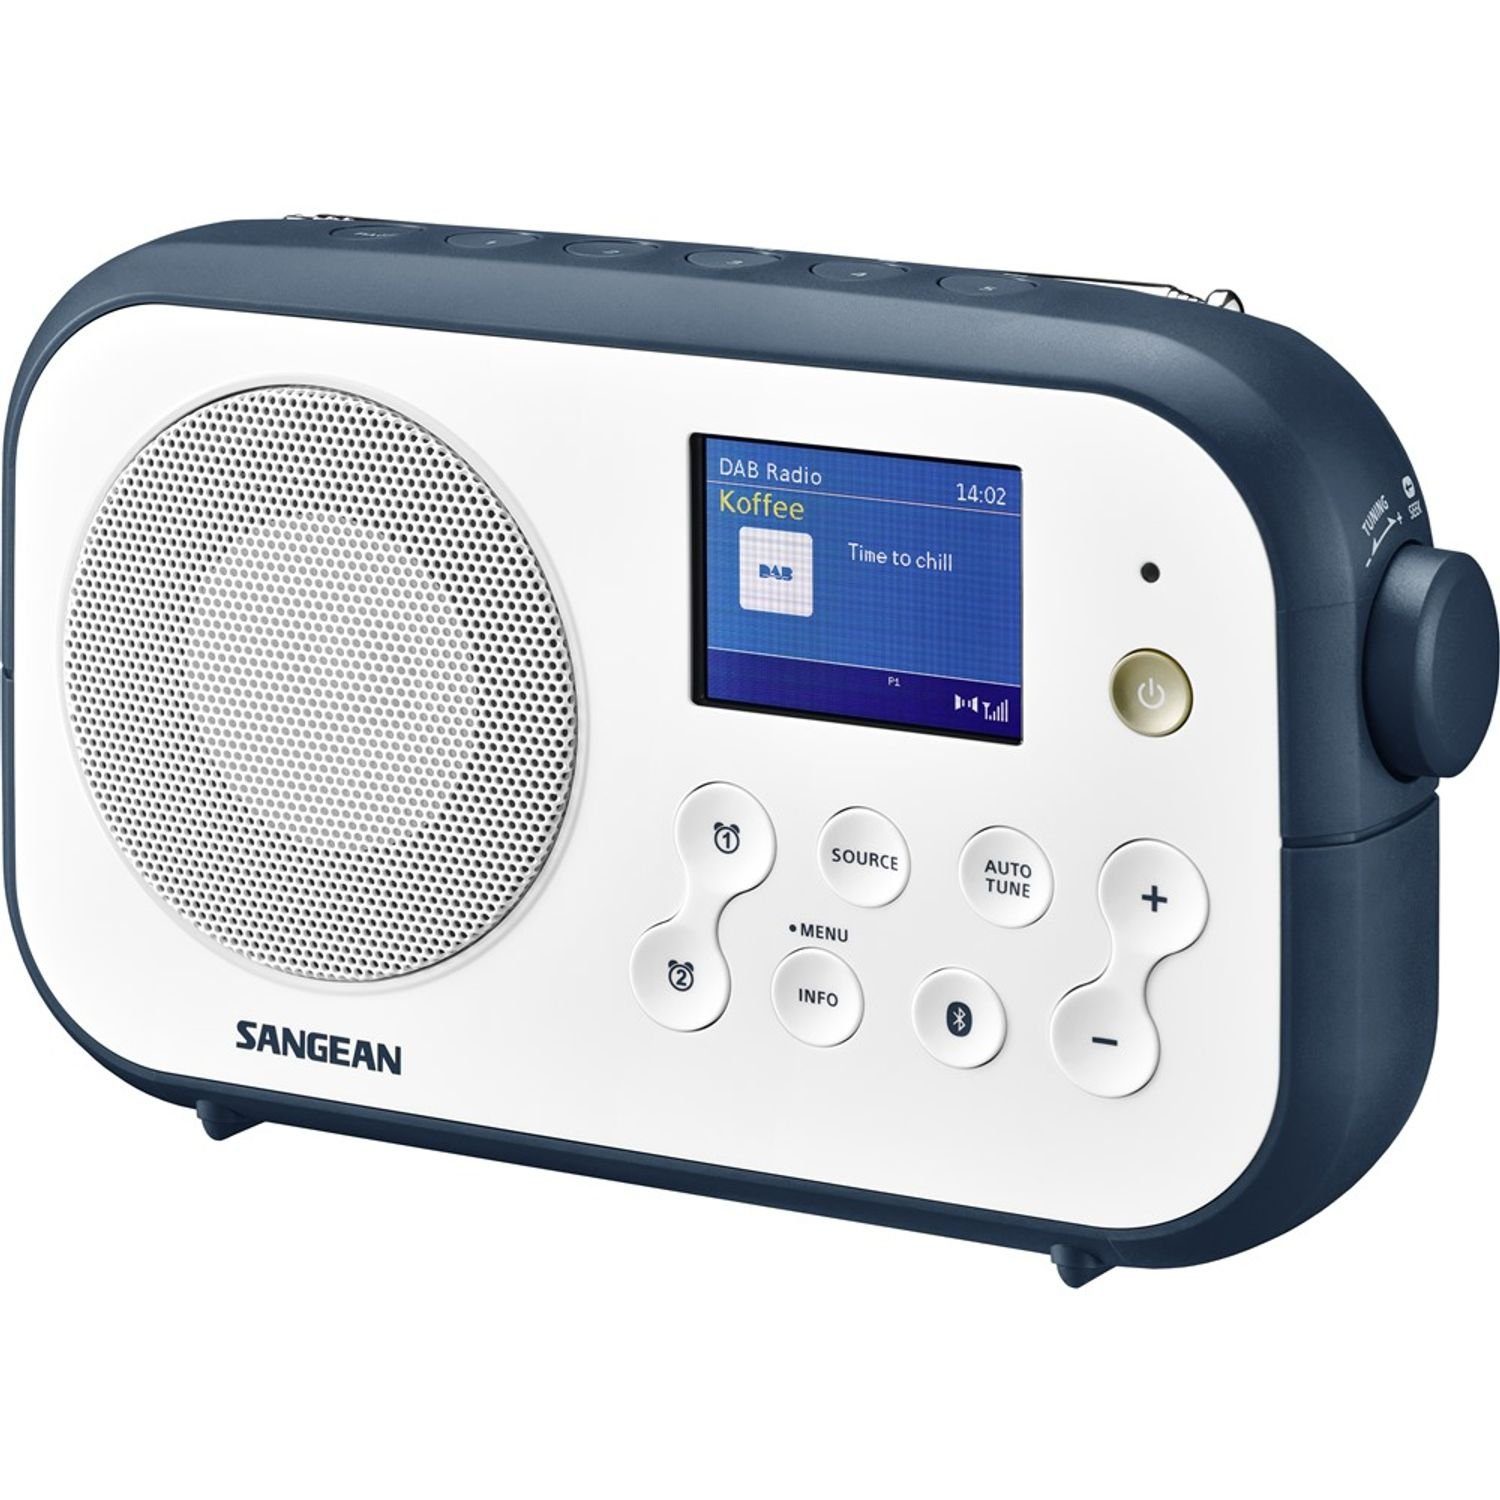 Digitalradio Ink DAB+ Sangean White - DPR-42BT (DAB) / Blue mit (DAB) FM-RDS Bluetooth-Empfänger Tragbarer